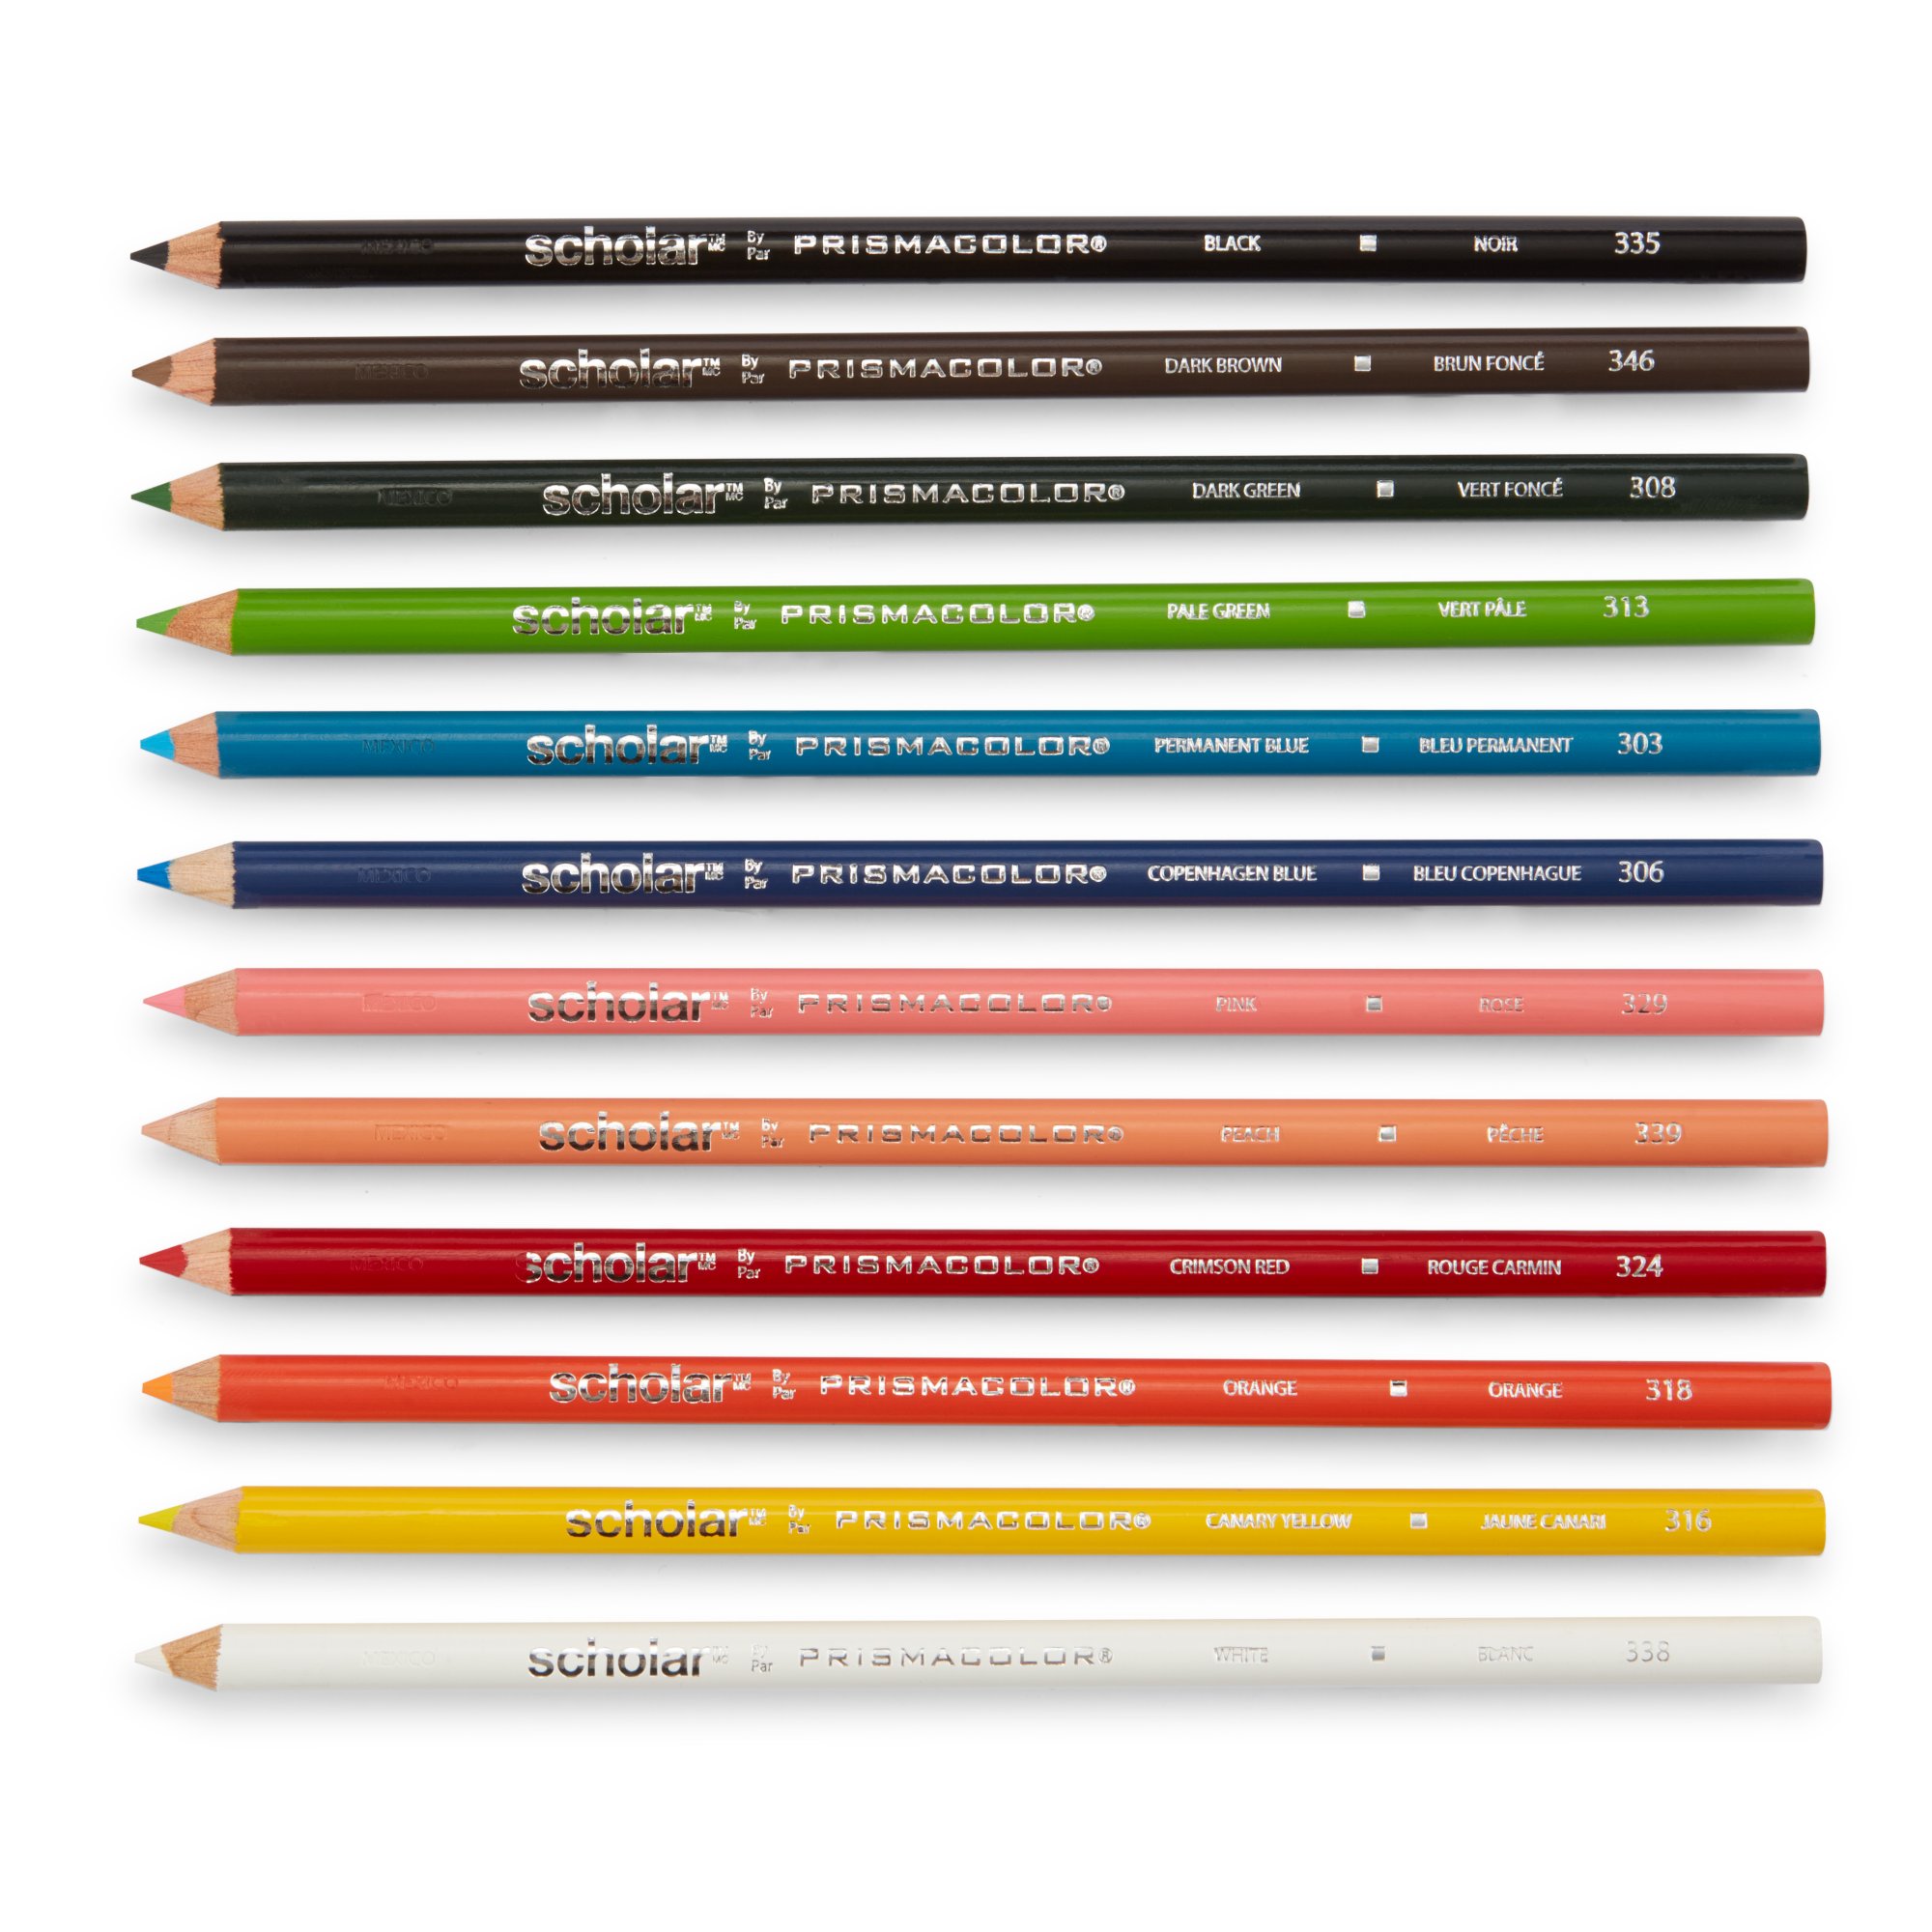 Prismacolor Scholar Colored Pencils, Assorted Colors, 48 Count 